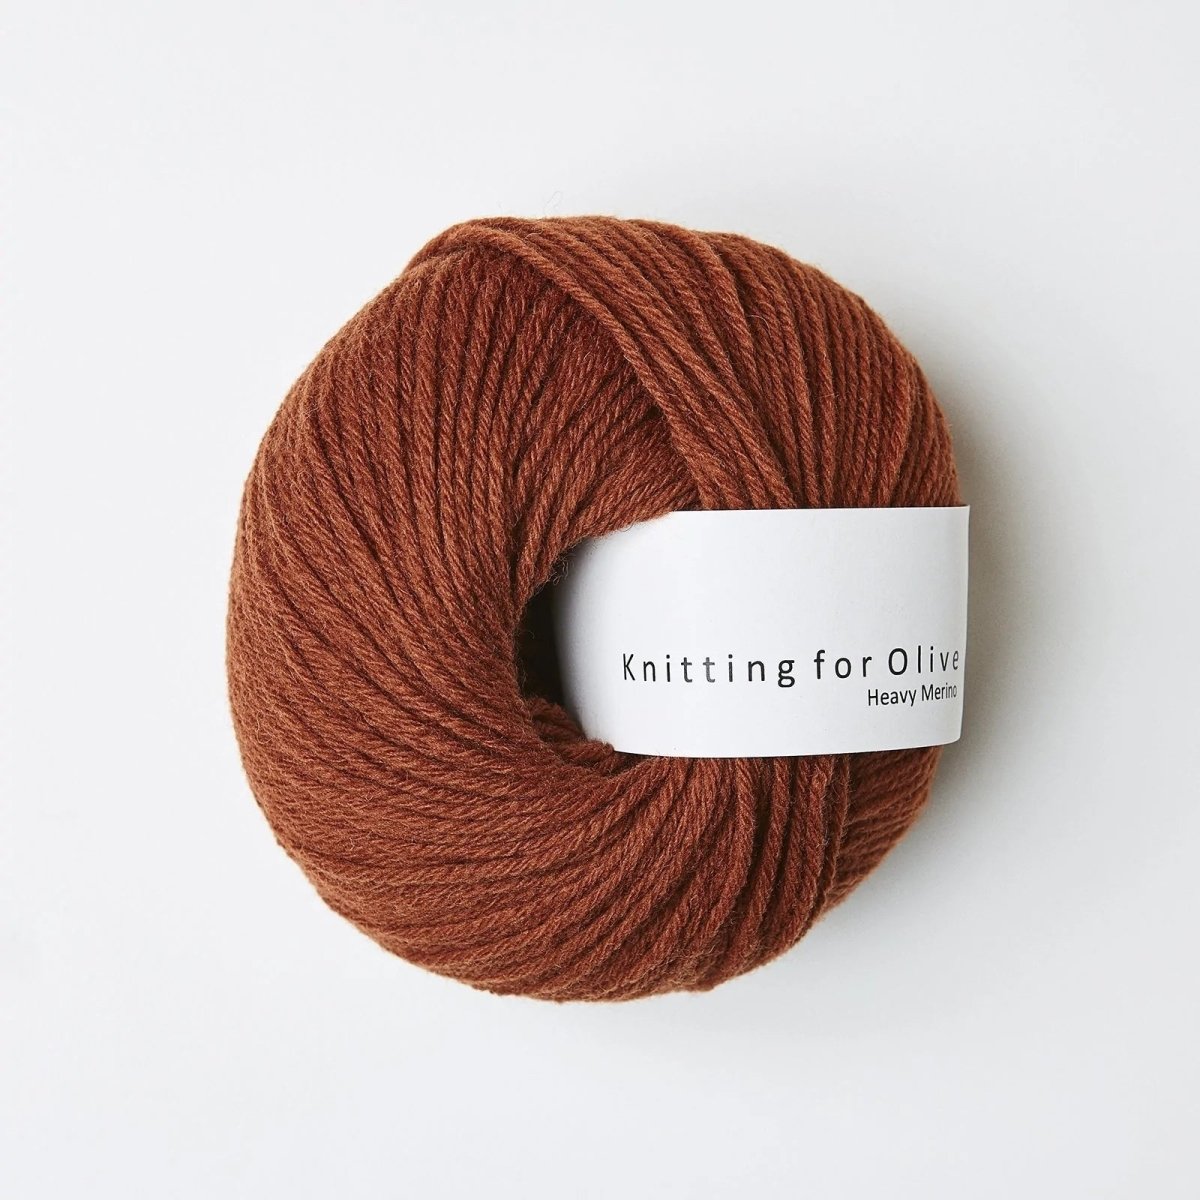 Heavy Merino Rust - Knitting for Olive